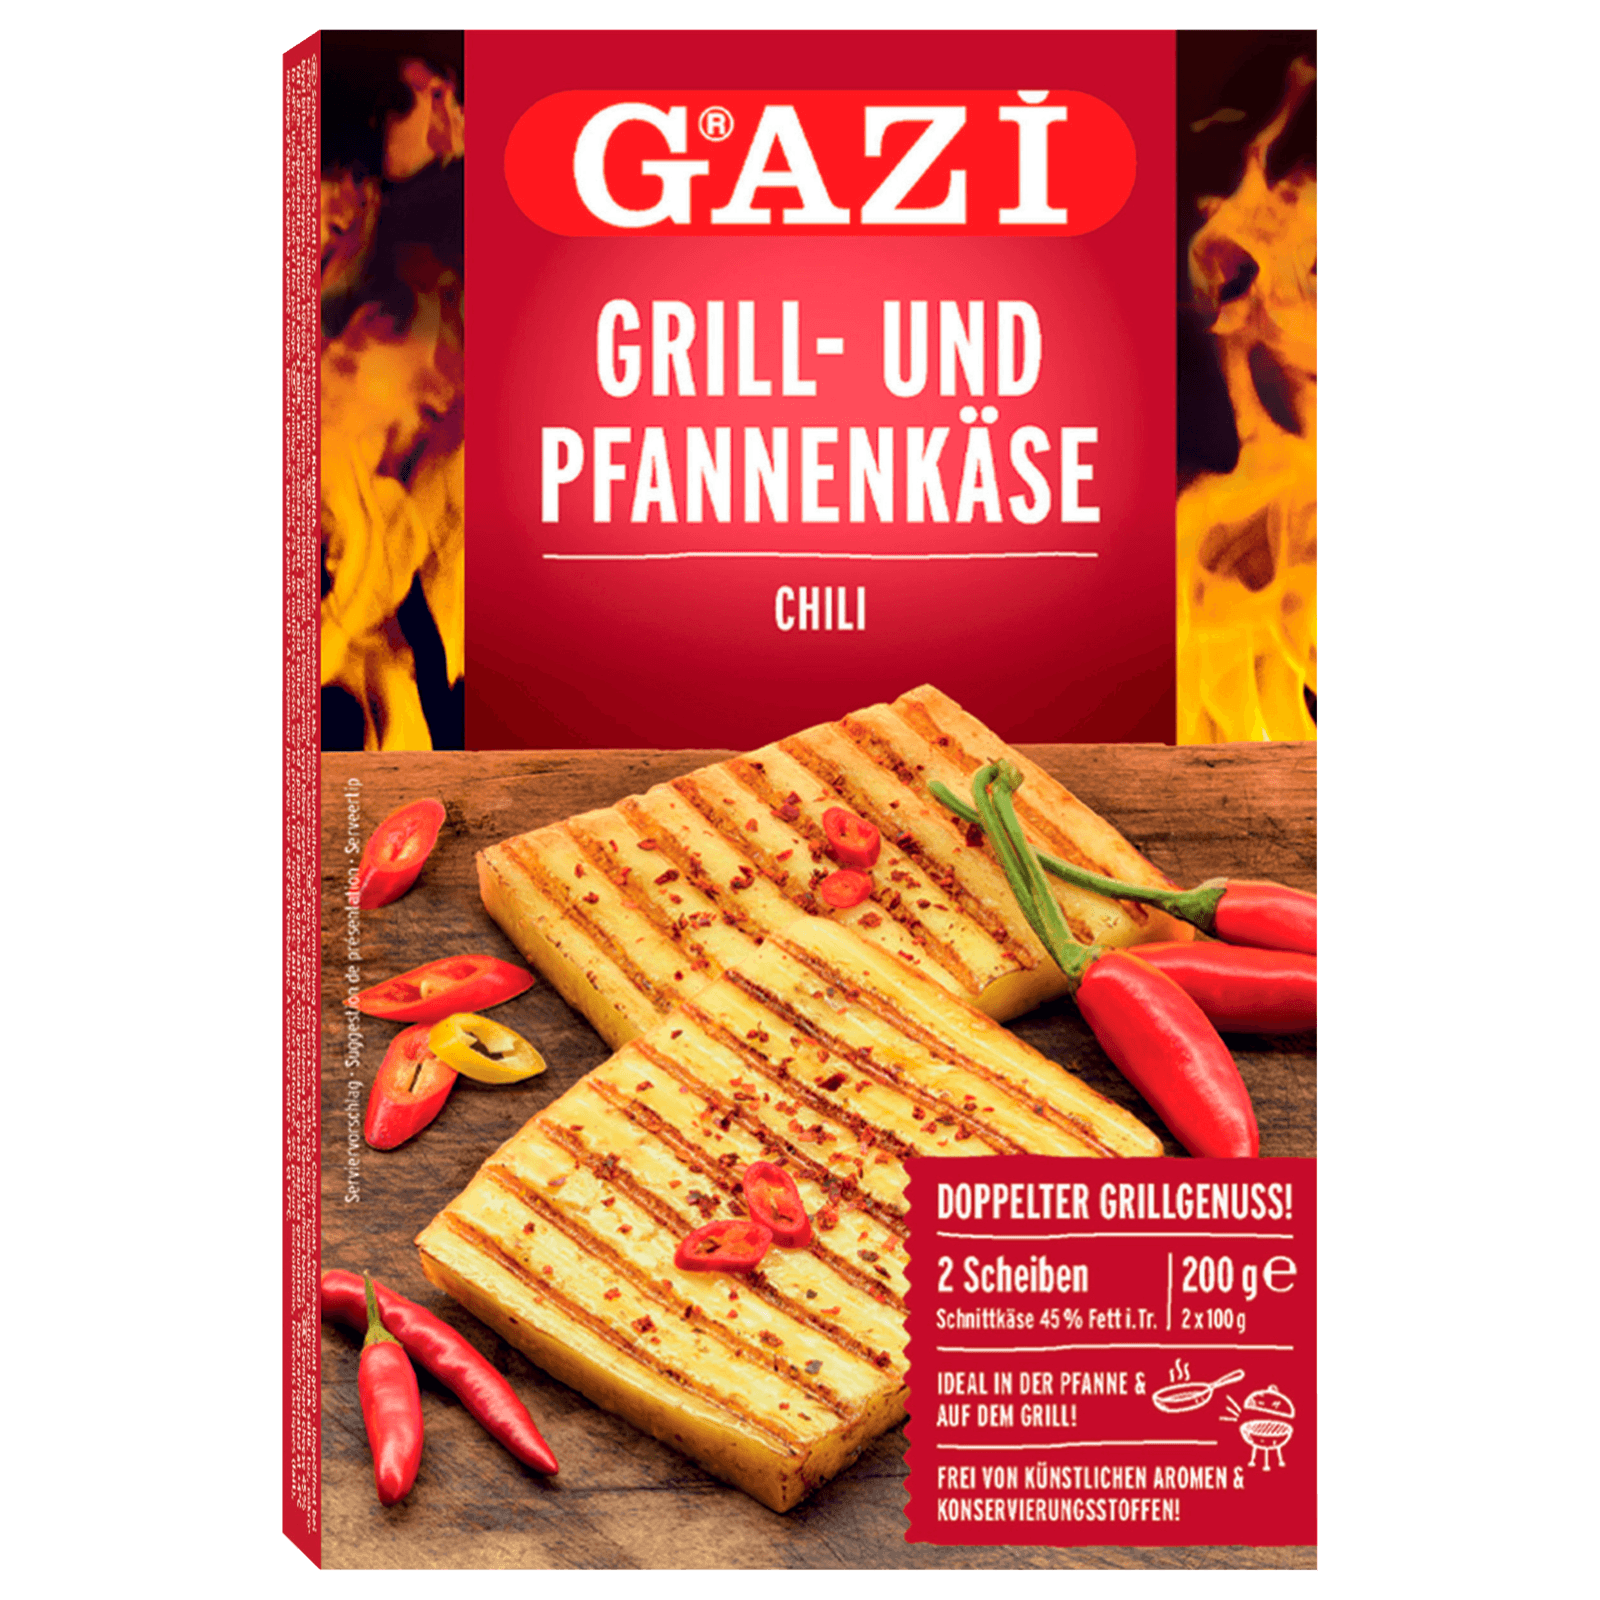 Gazi Grill- und Pfannenkäse Chili 5x 200g Schnittkäse, 17,99 €